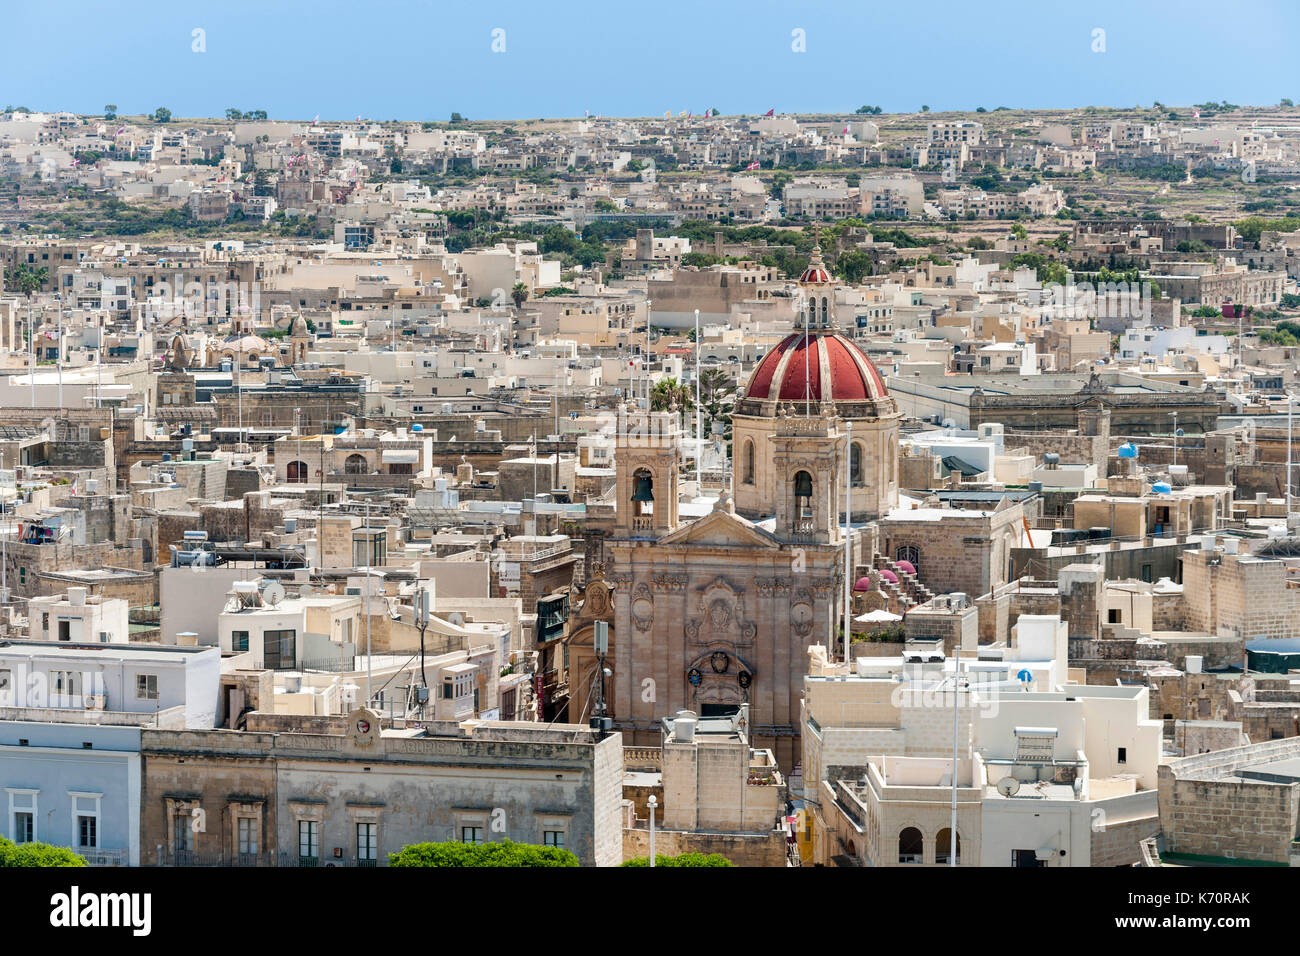 Vista desde la ciudadela de Victoria, la capital de la isla de Gozo, en Malta. Foto de stock